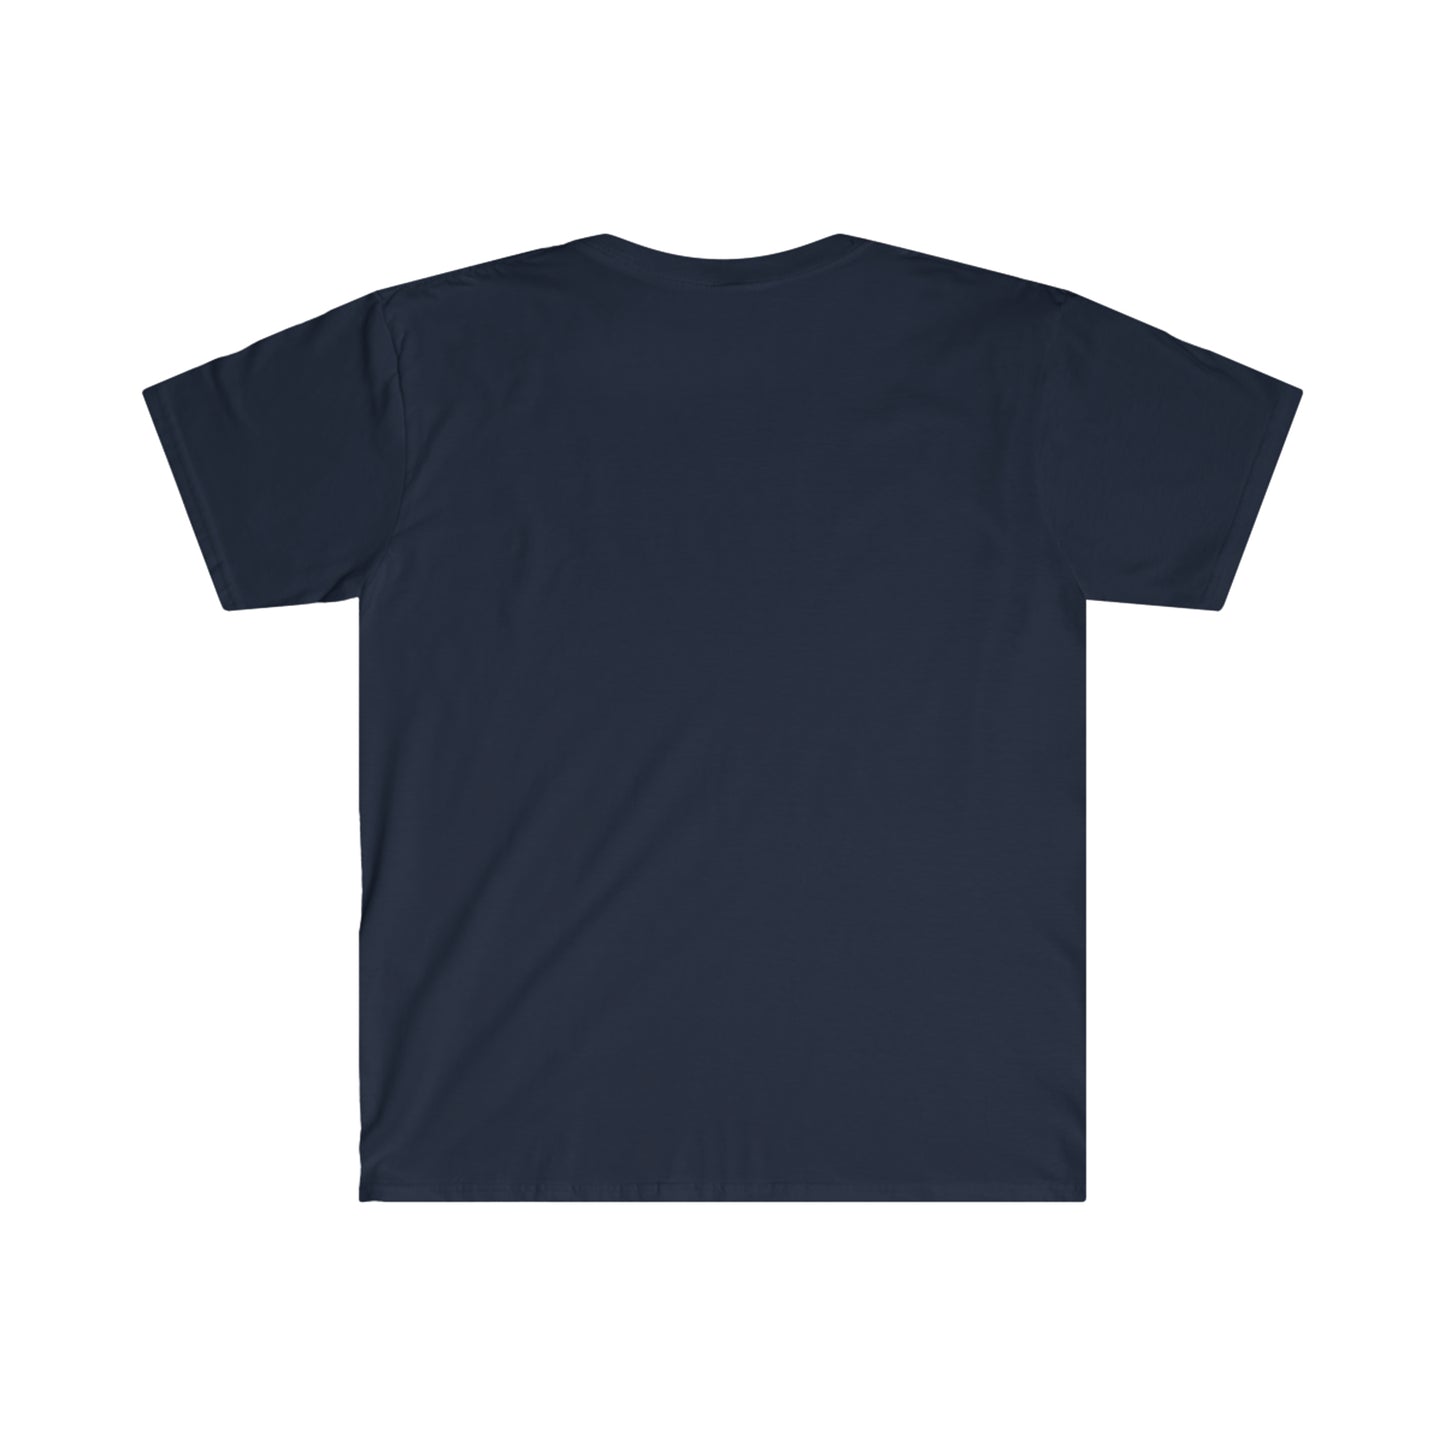 I Sweat Cabernet Unisex Softstyle T-Shirt